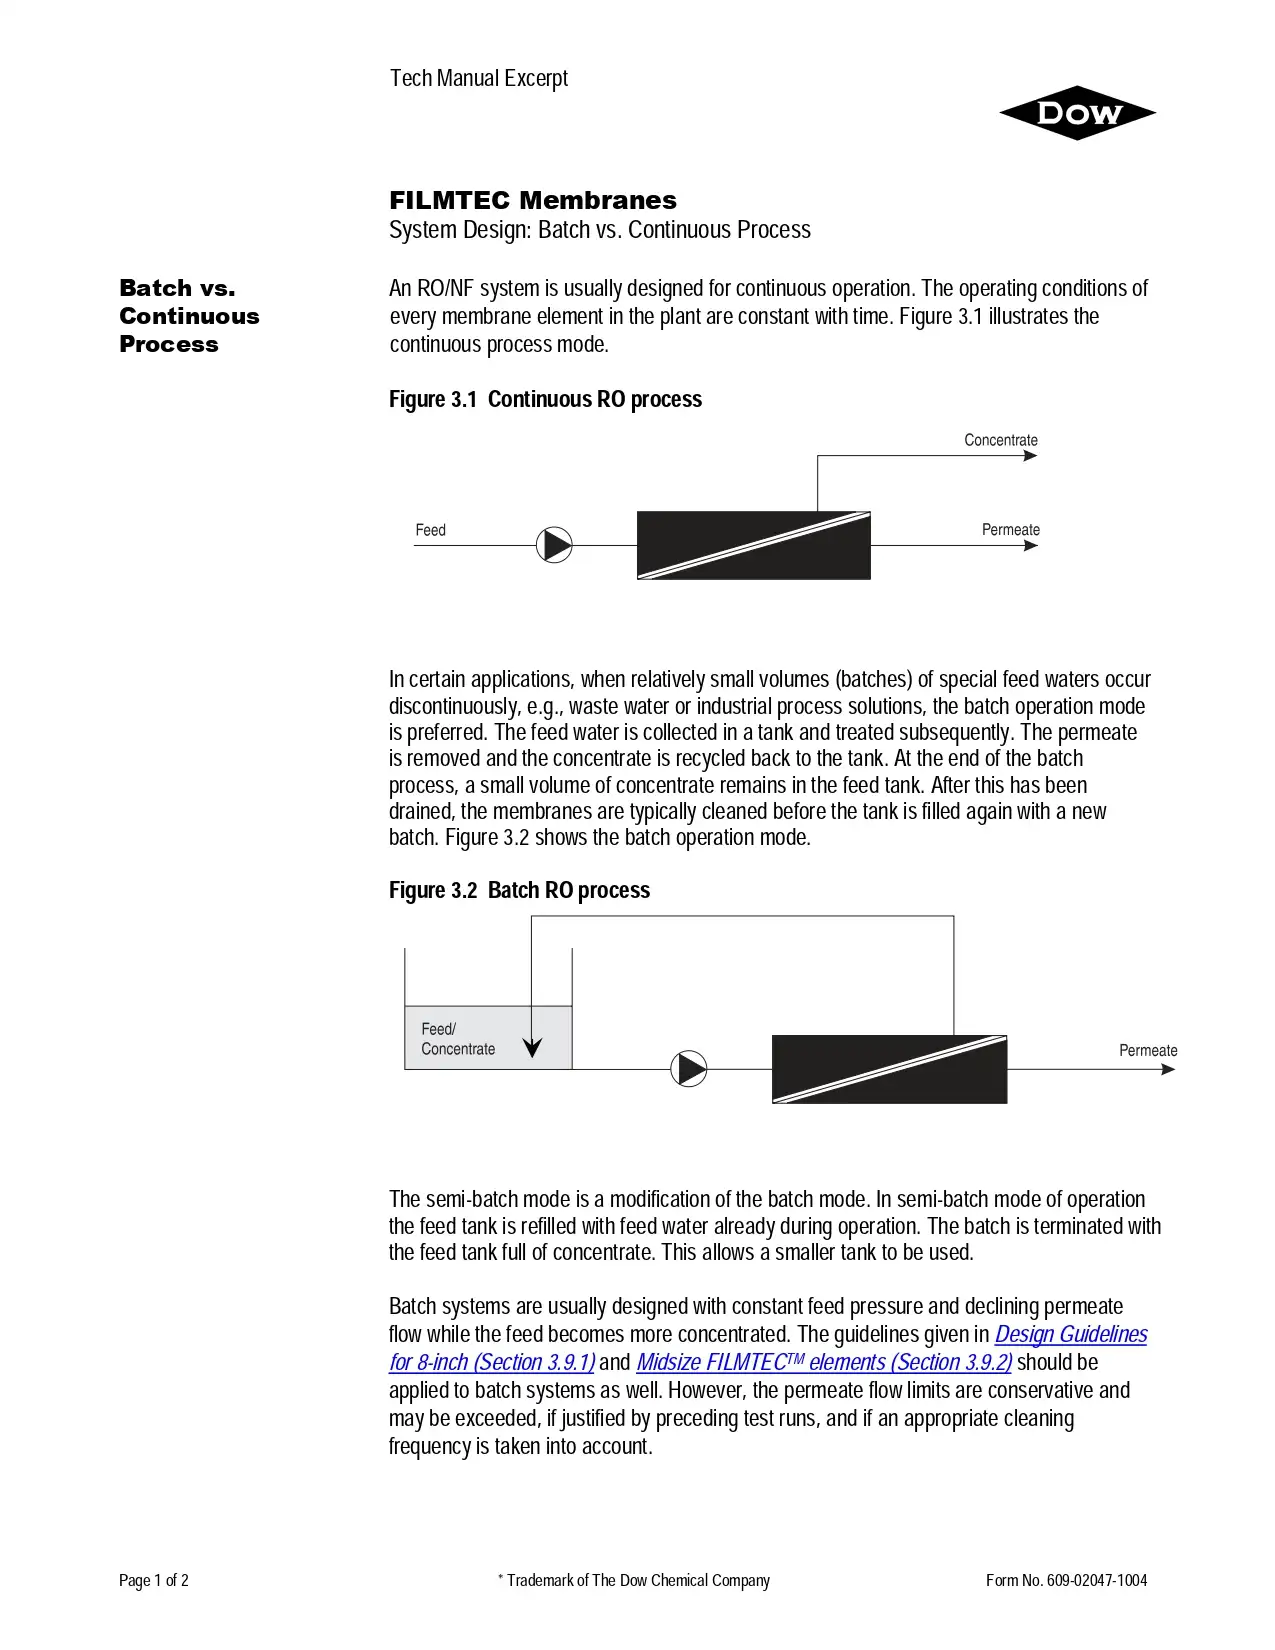 Filmtec Membranes System Design: Batch vs. Continuous Process